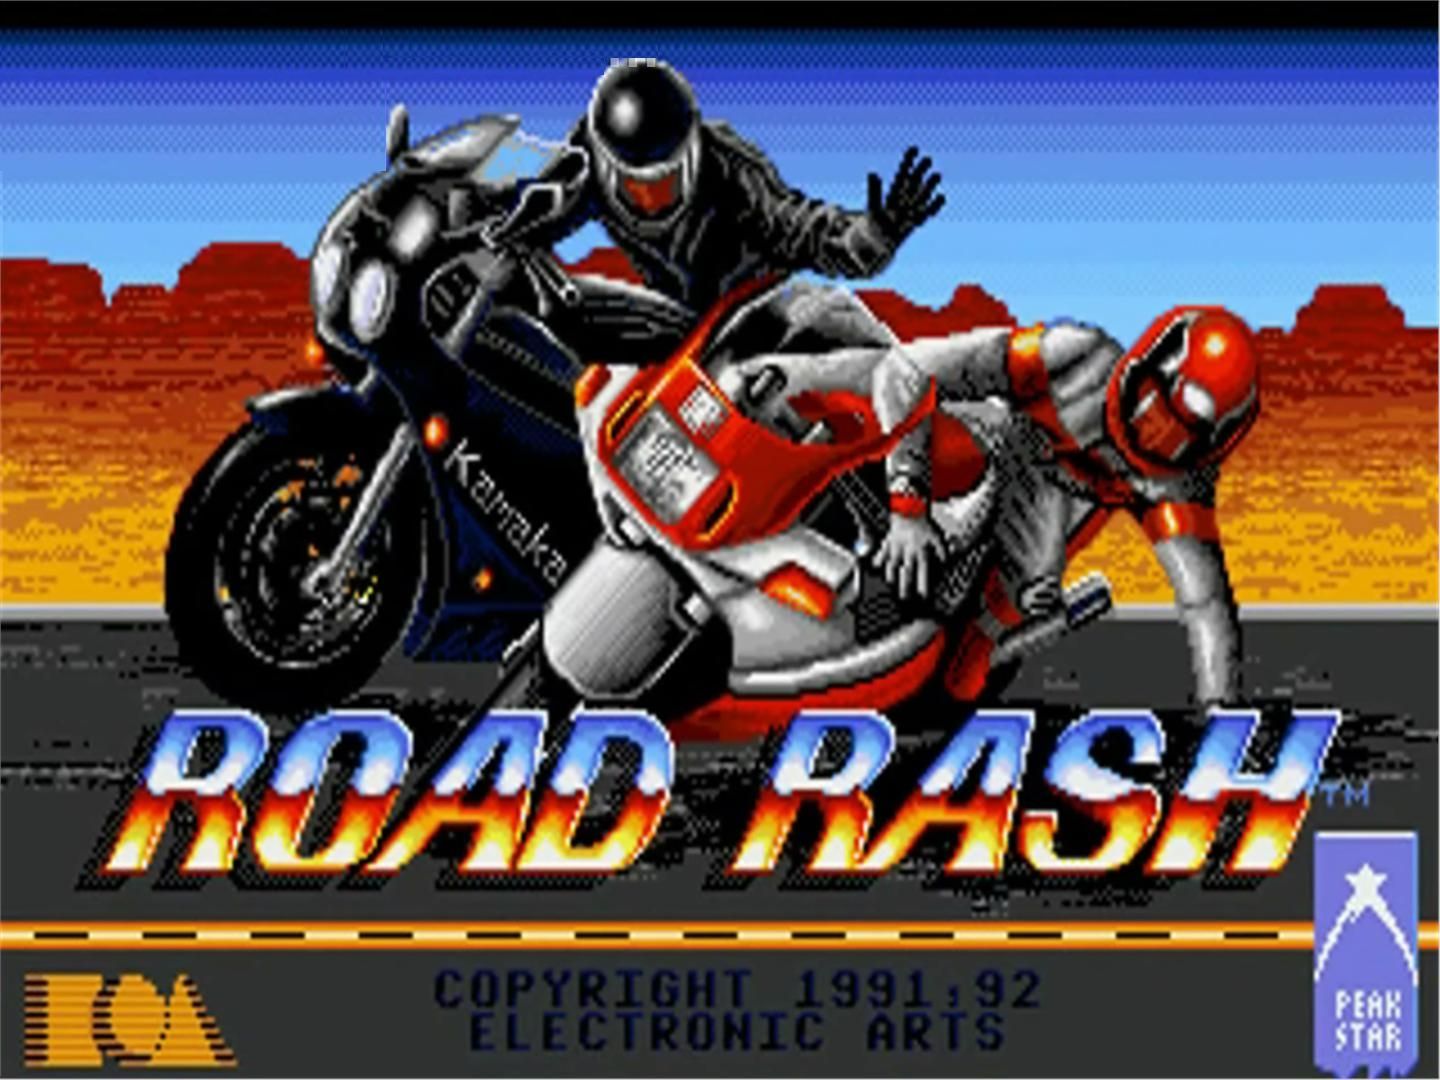 Road Rash Mobile Game Full Version Download